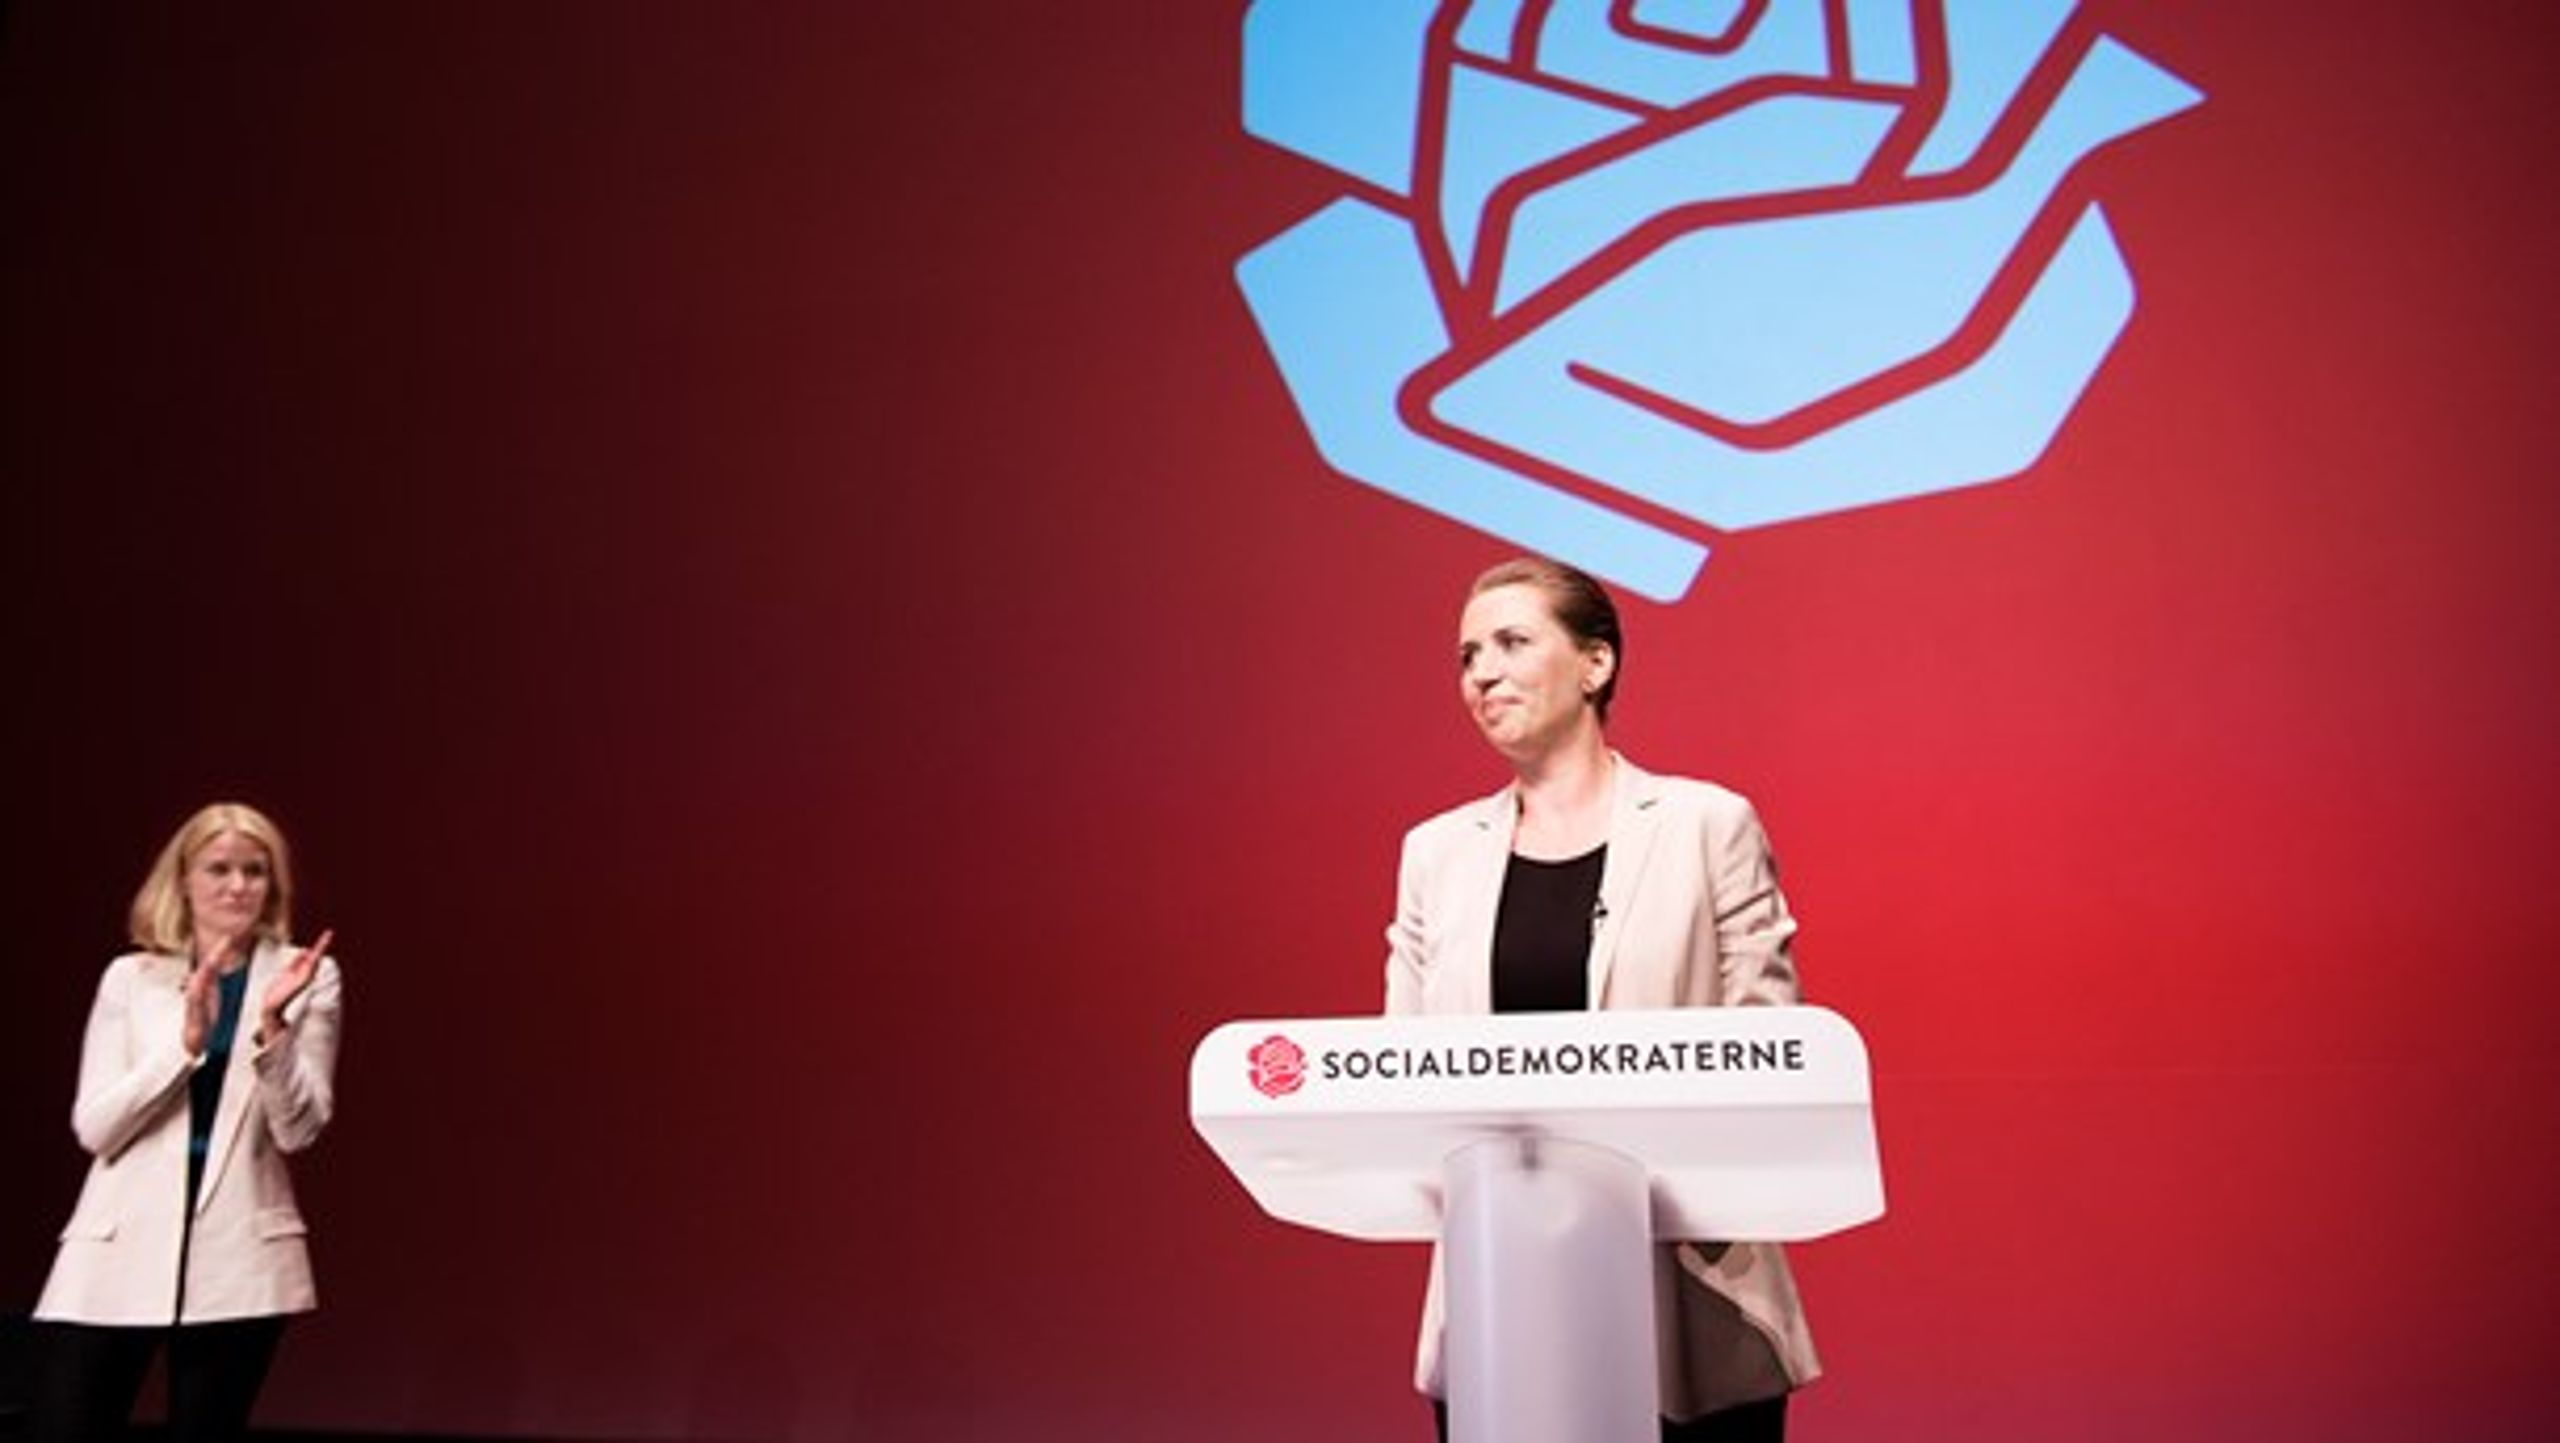 På en ekstraordinær kongres valgte Socialdemokraterne 28. juni 2015&nbsp;Mette Frederiksen som ny formand. Hun overtog posten efter Helle Thorning-Schmidt, der oven på valgnederlaget trådte tilbage.&nbsp;